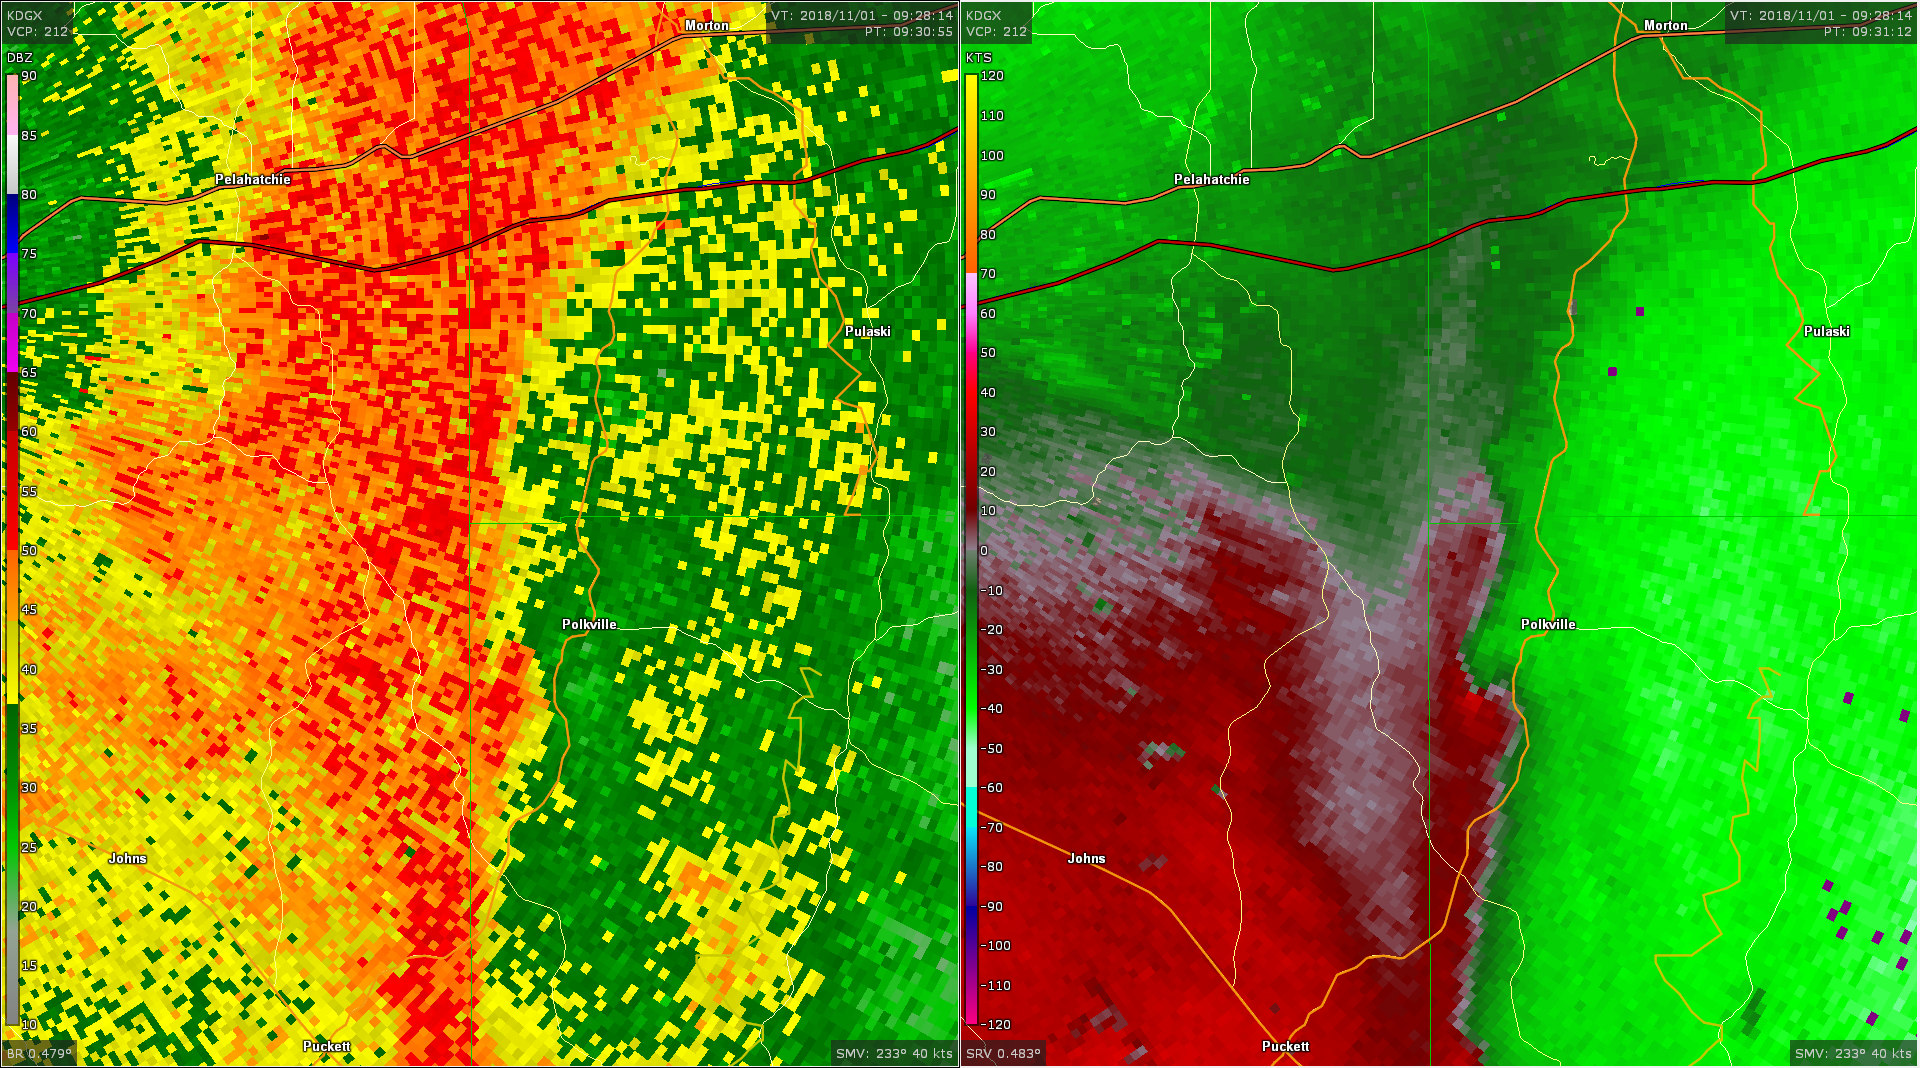 Radar - Polkville Tornado